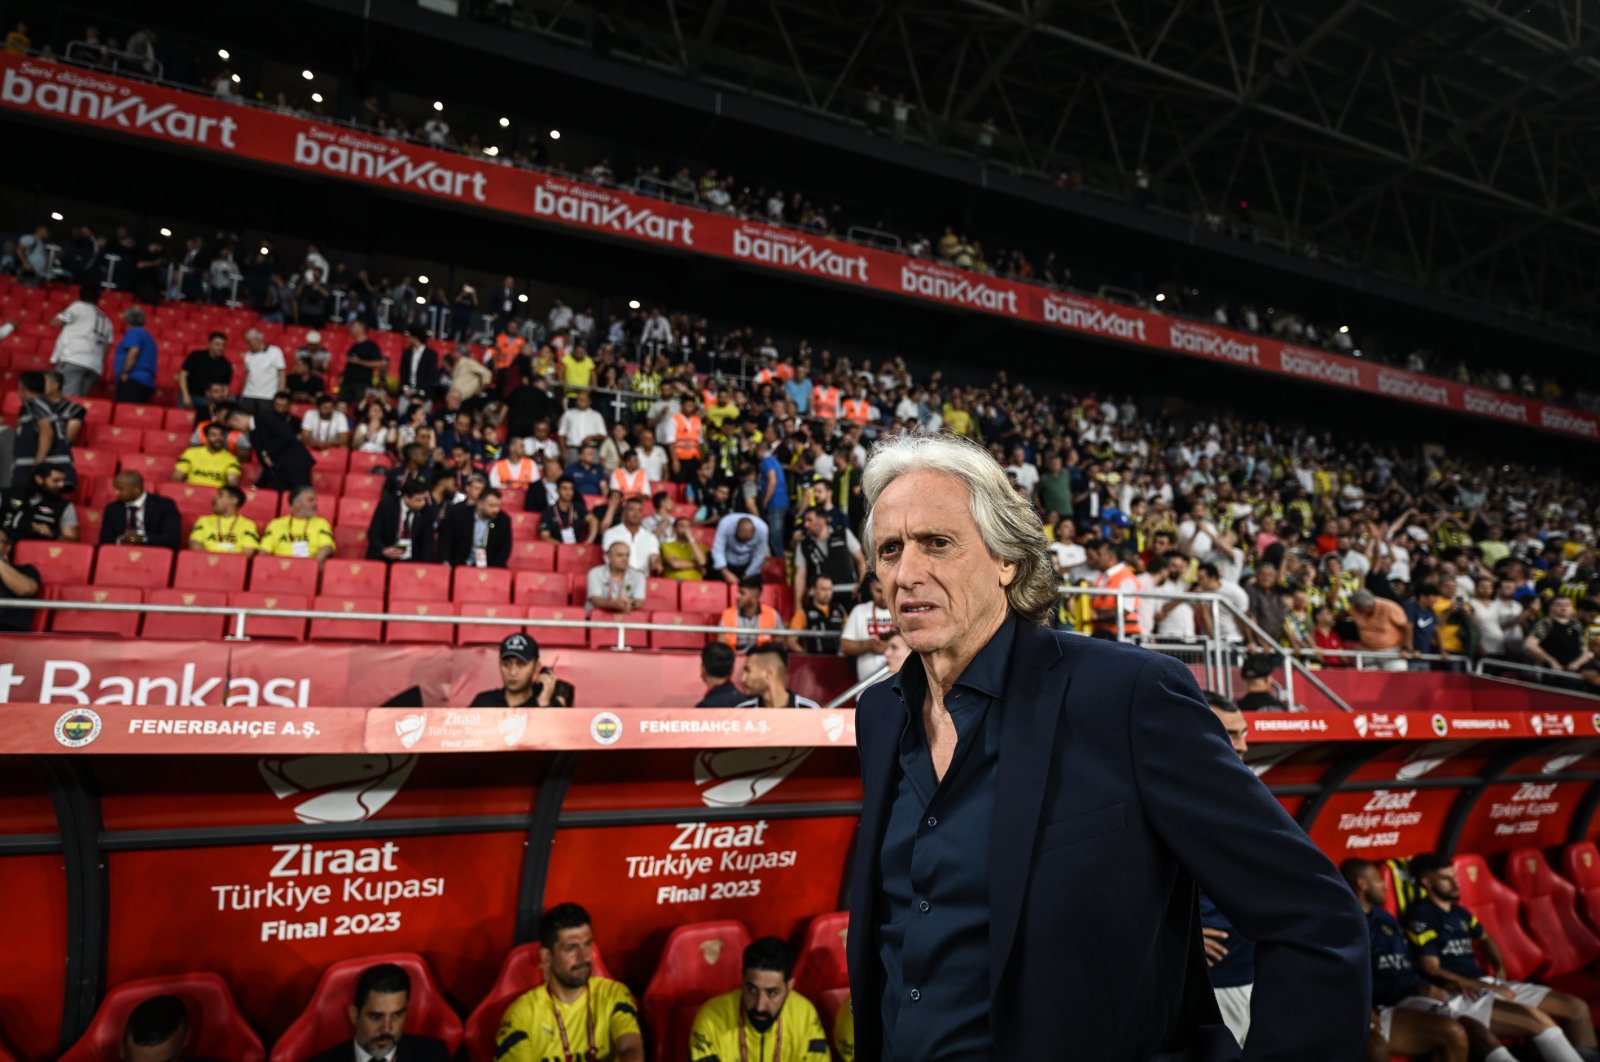 Fenerbahçe, Jorge Jesus berpisah setelah kemenangan Piala Turki